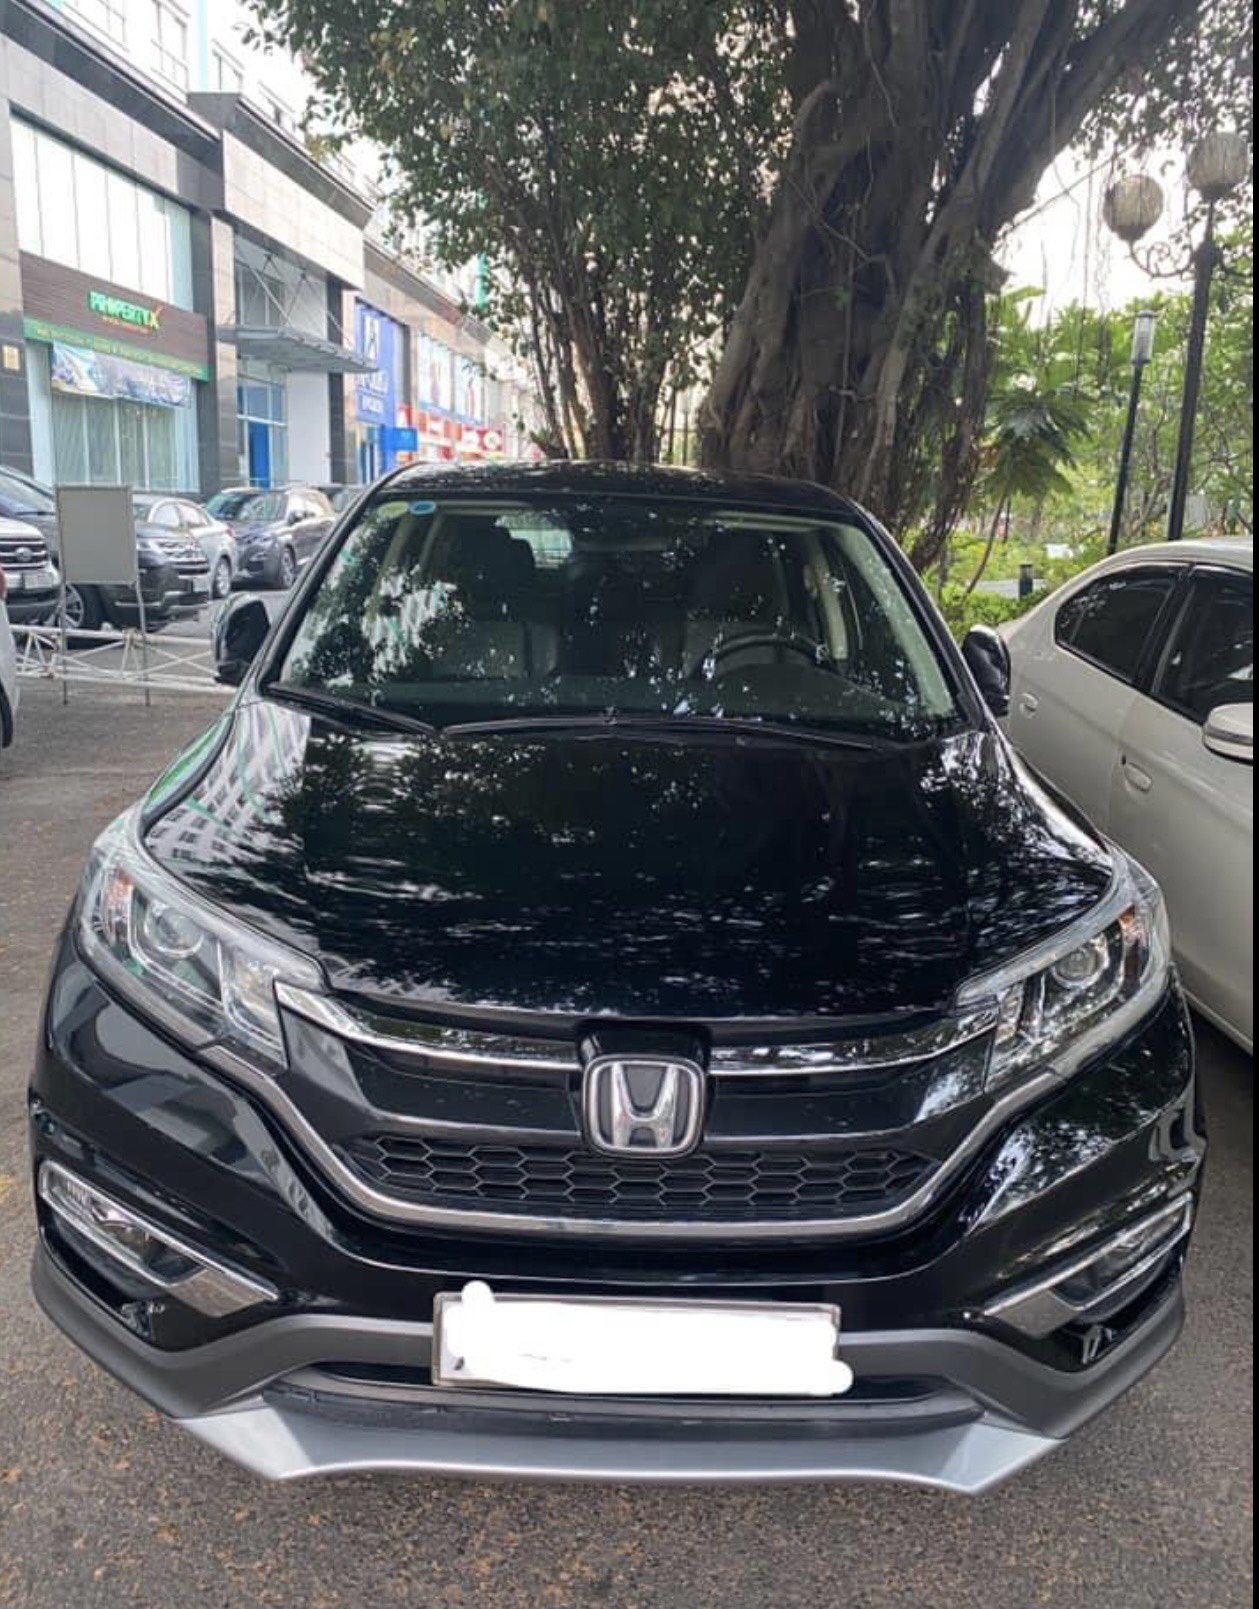 Honda CRV 20 New 2016 XE NHẬP KHẨU NGUYÊN CHIẾC  Hồ Hoàng Bảo   MBN82289  0937888599